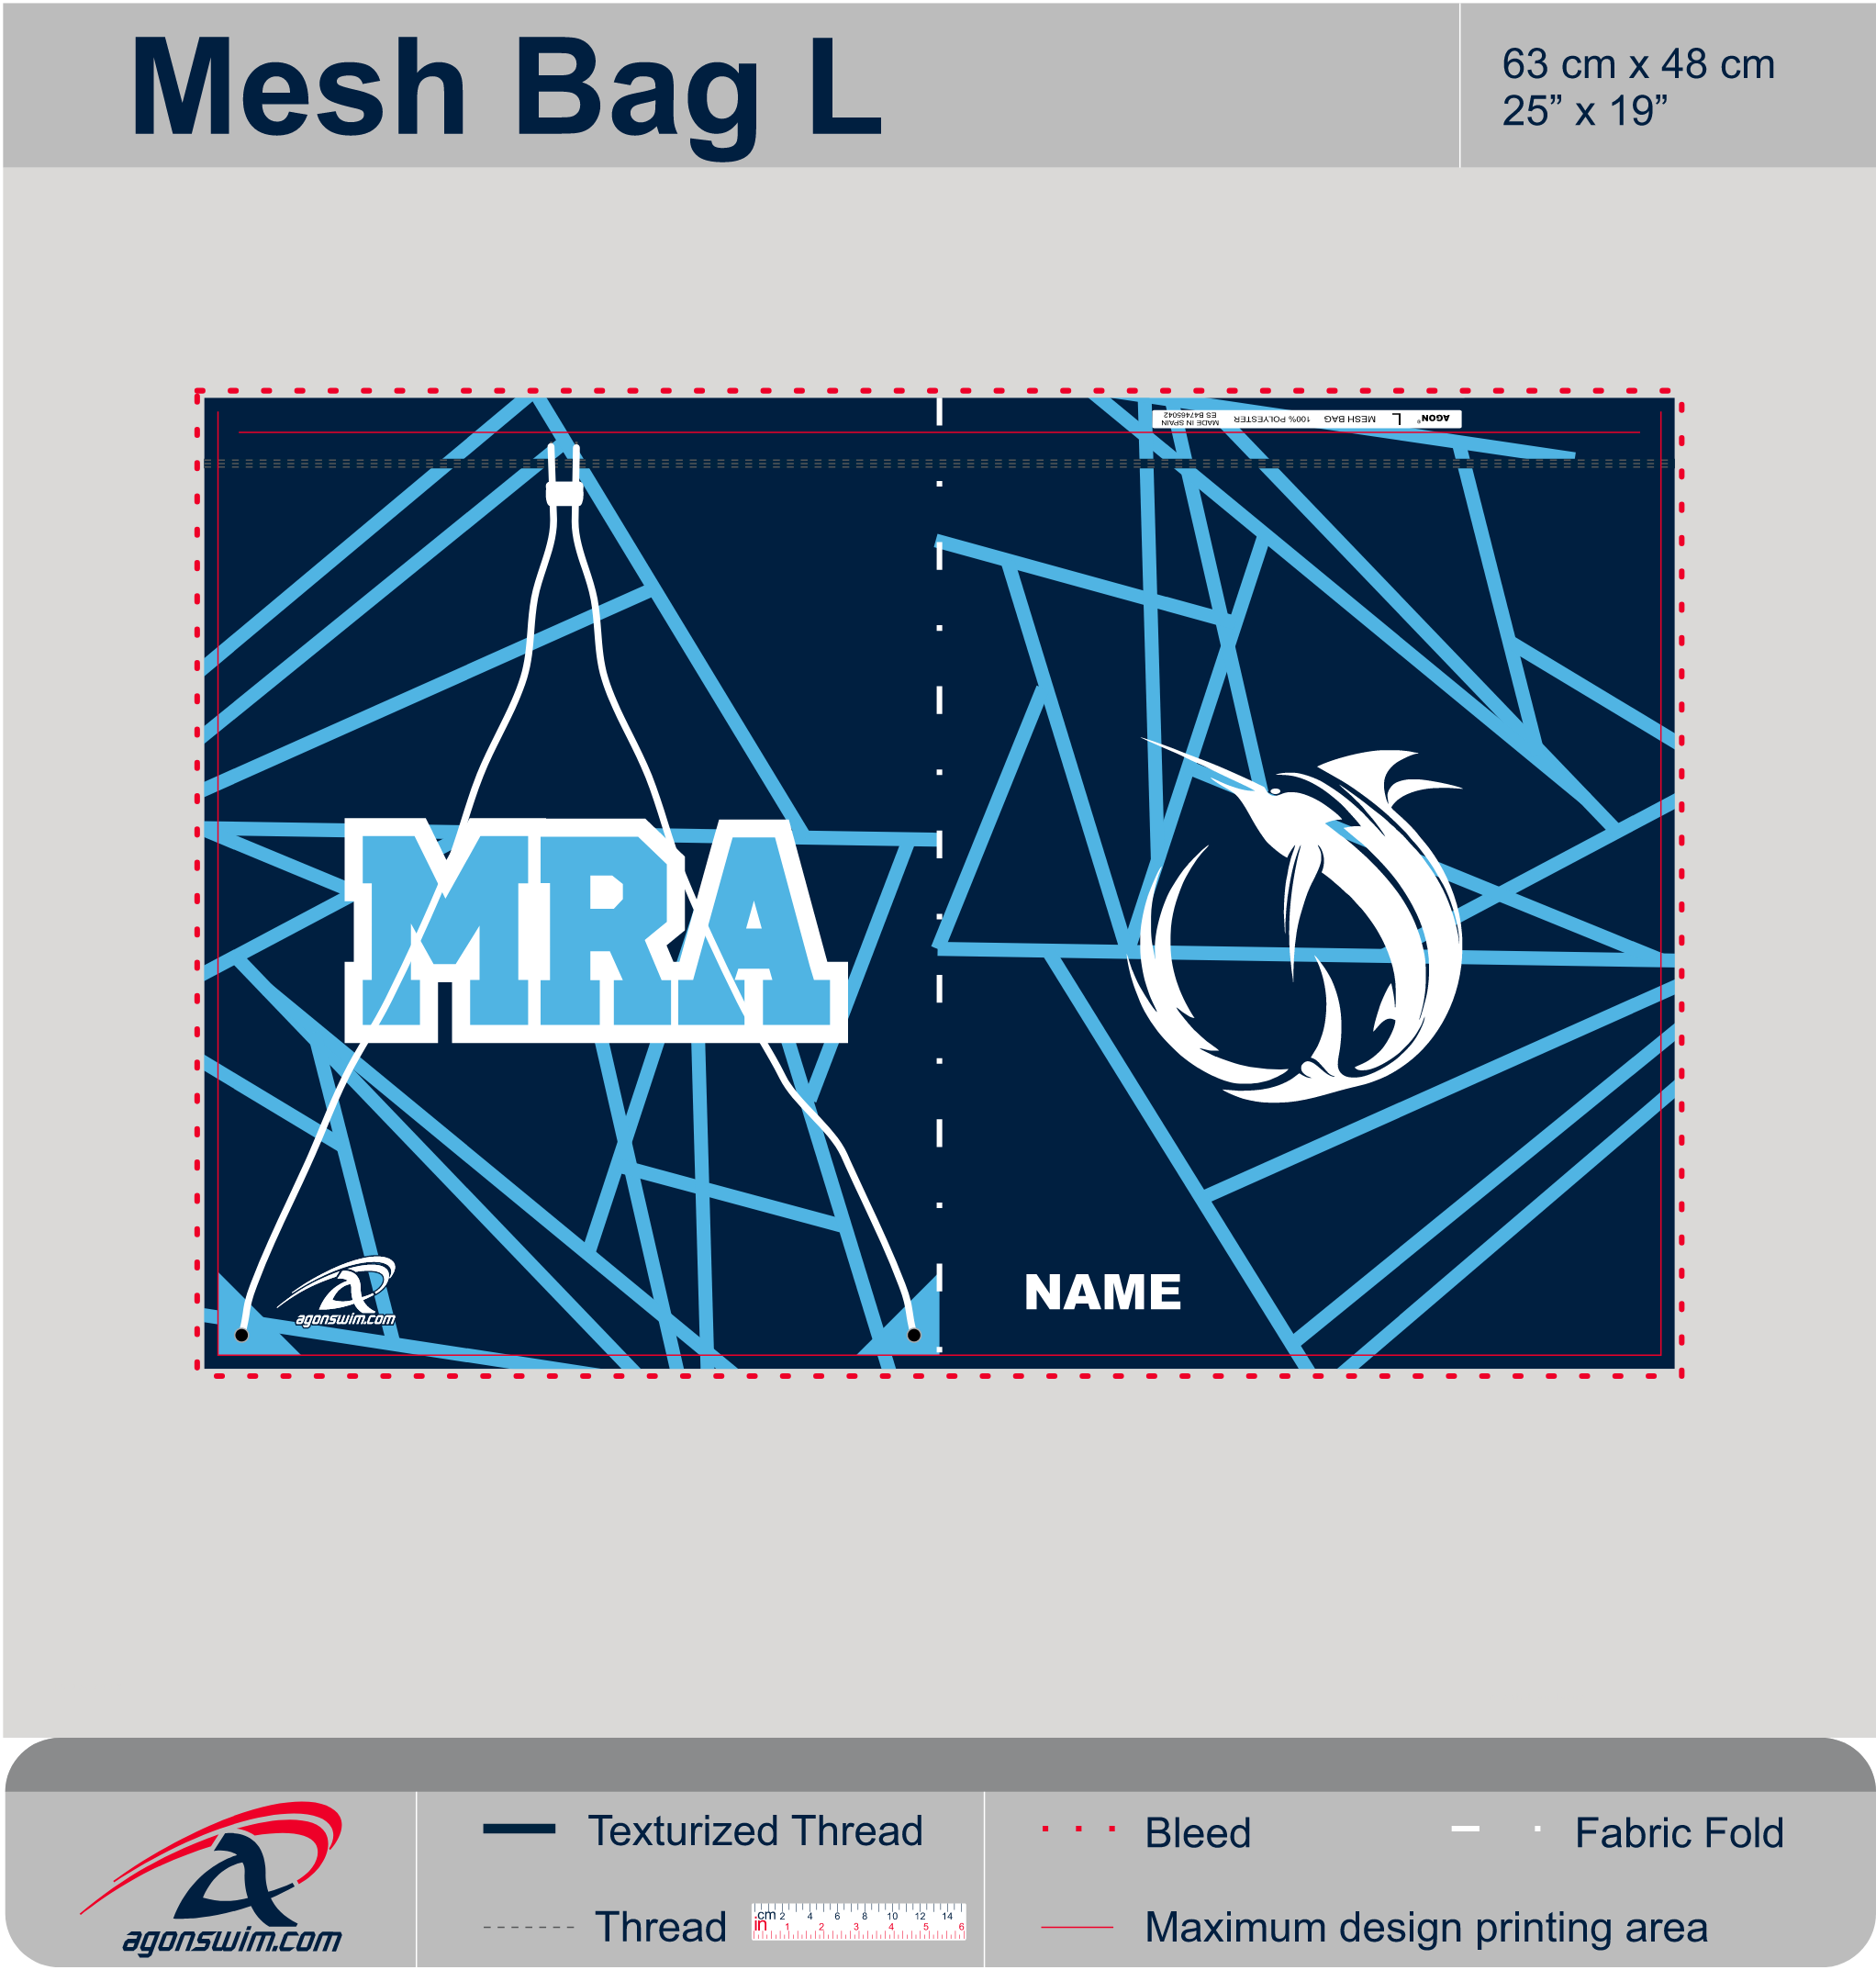 Mesh bag L